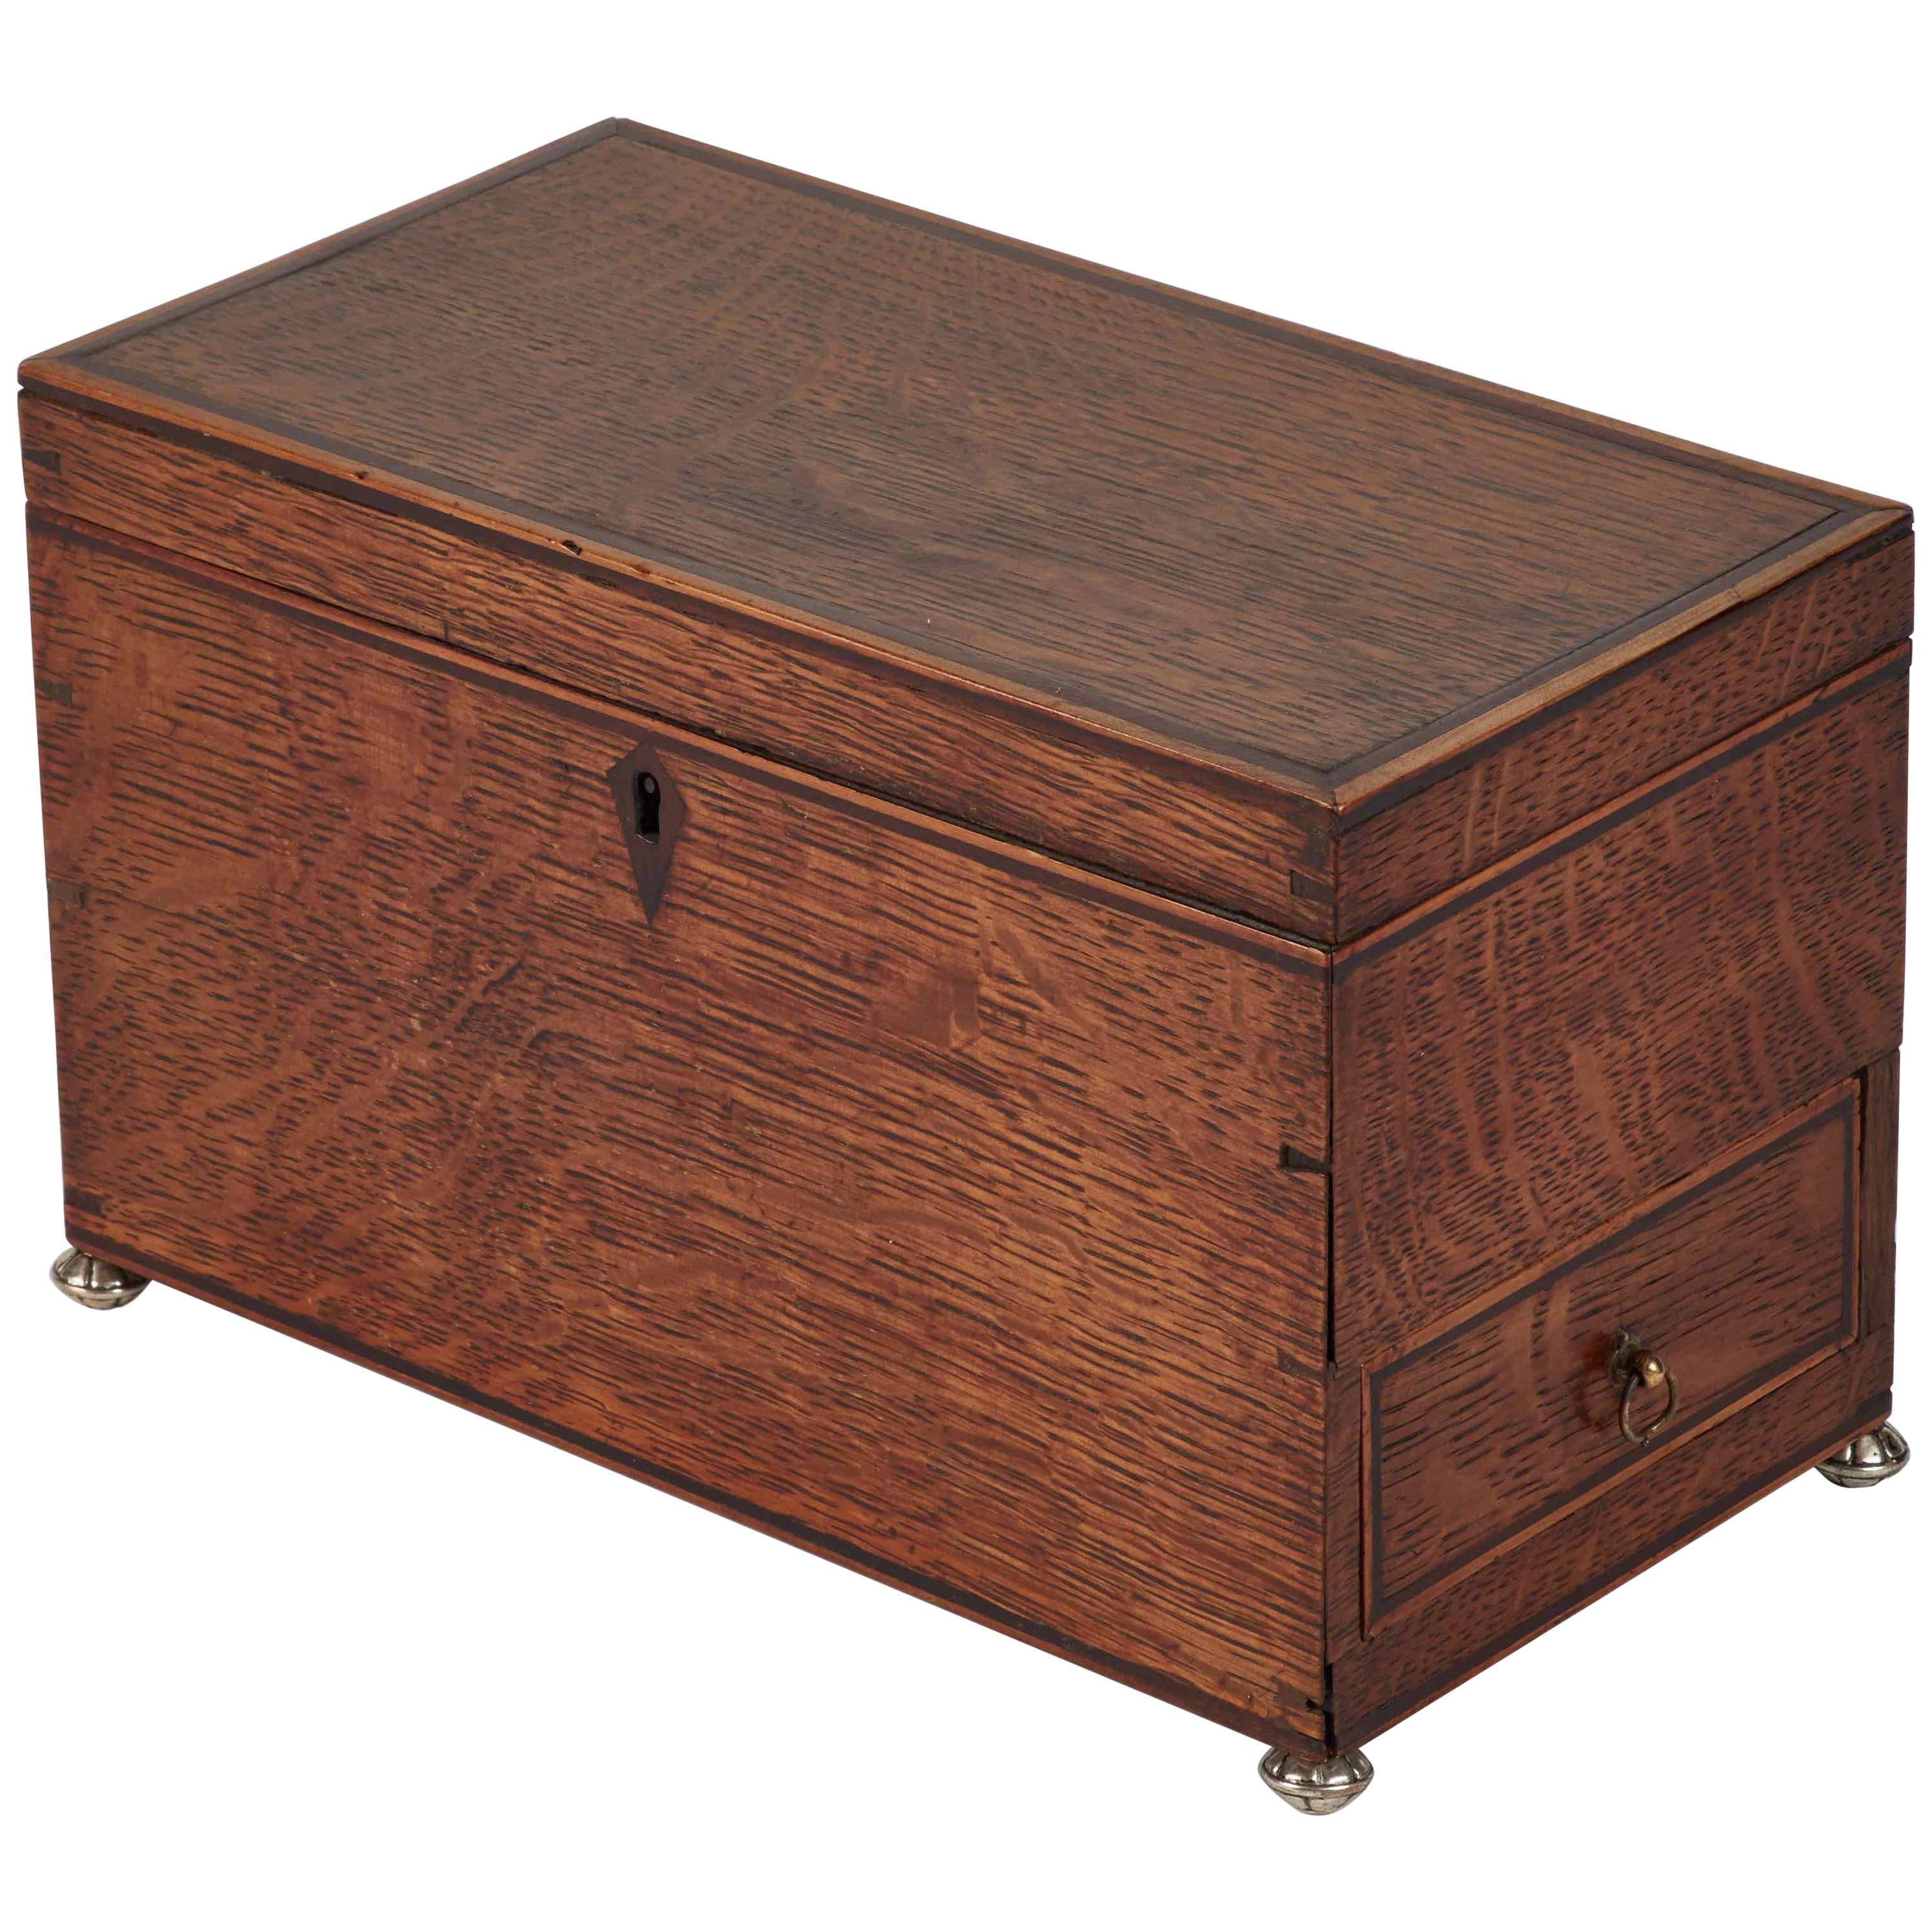 1810s English Georgian Oak Box with Metal Feet 